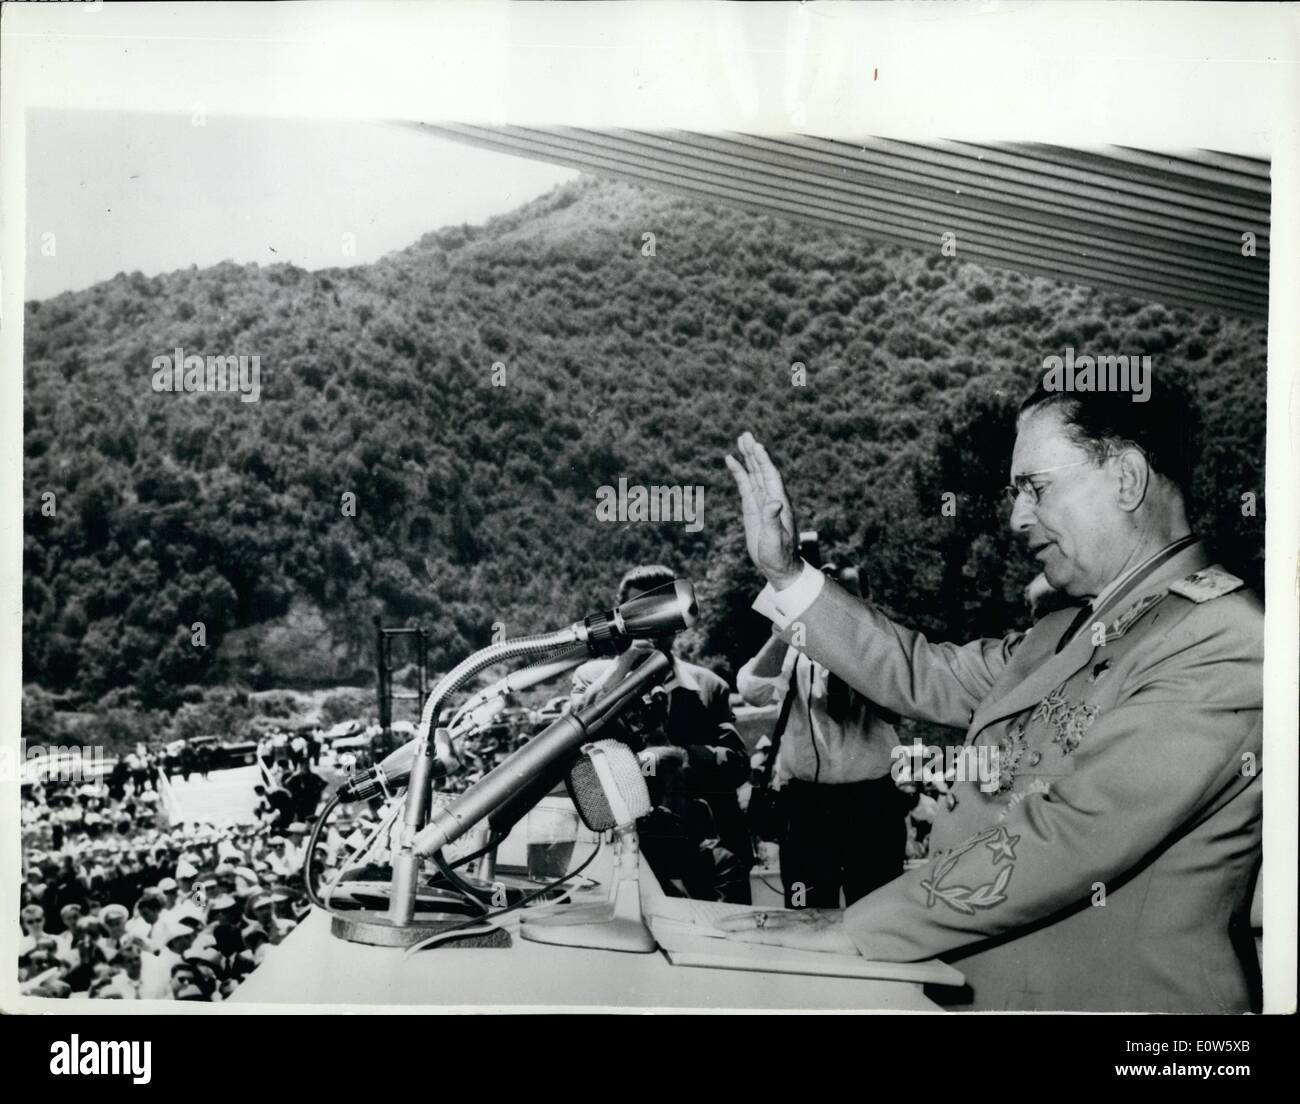 7. Juli 1961 - 20. Jahrestag von der jugoslawischen Aufstand: Präsident Josip Broz Tito Jugoslawien sprach bei einer Versammlung im Titovo Uzice Dienstag, der 20. Jahrestag des Aufstands des jugoslawischen Volkes. Das Foto zeigt Präsident Tito sprechen. Stockfoto